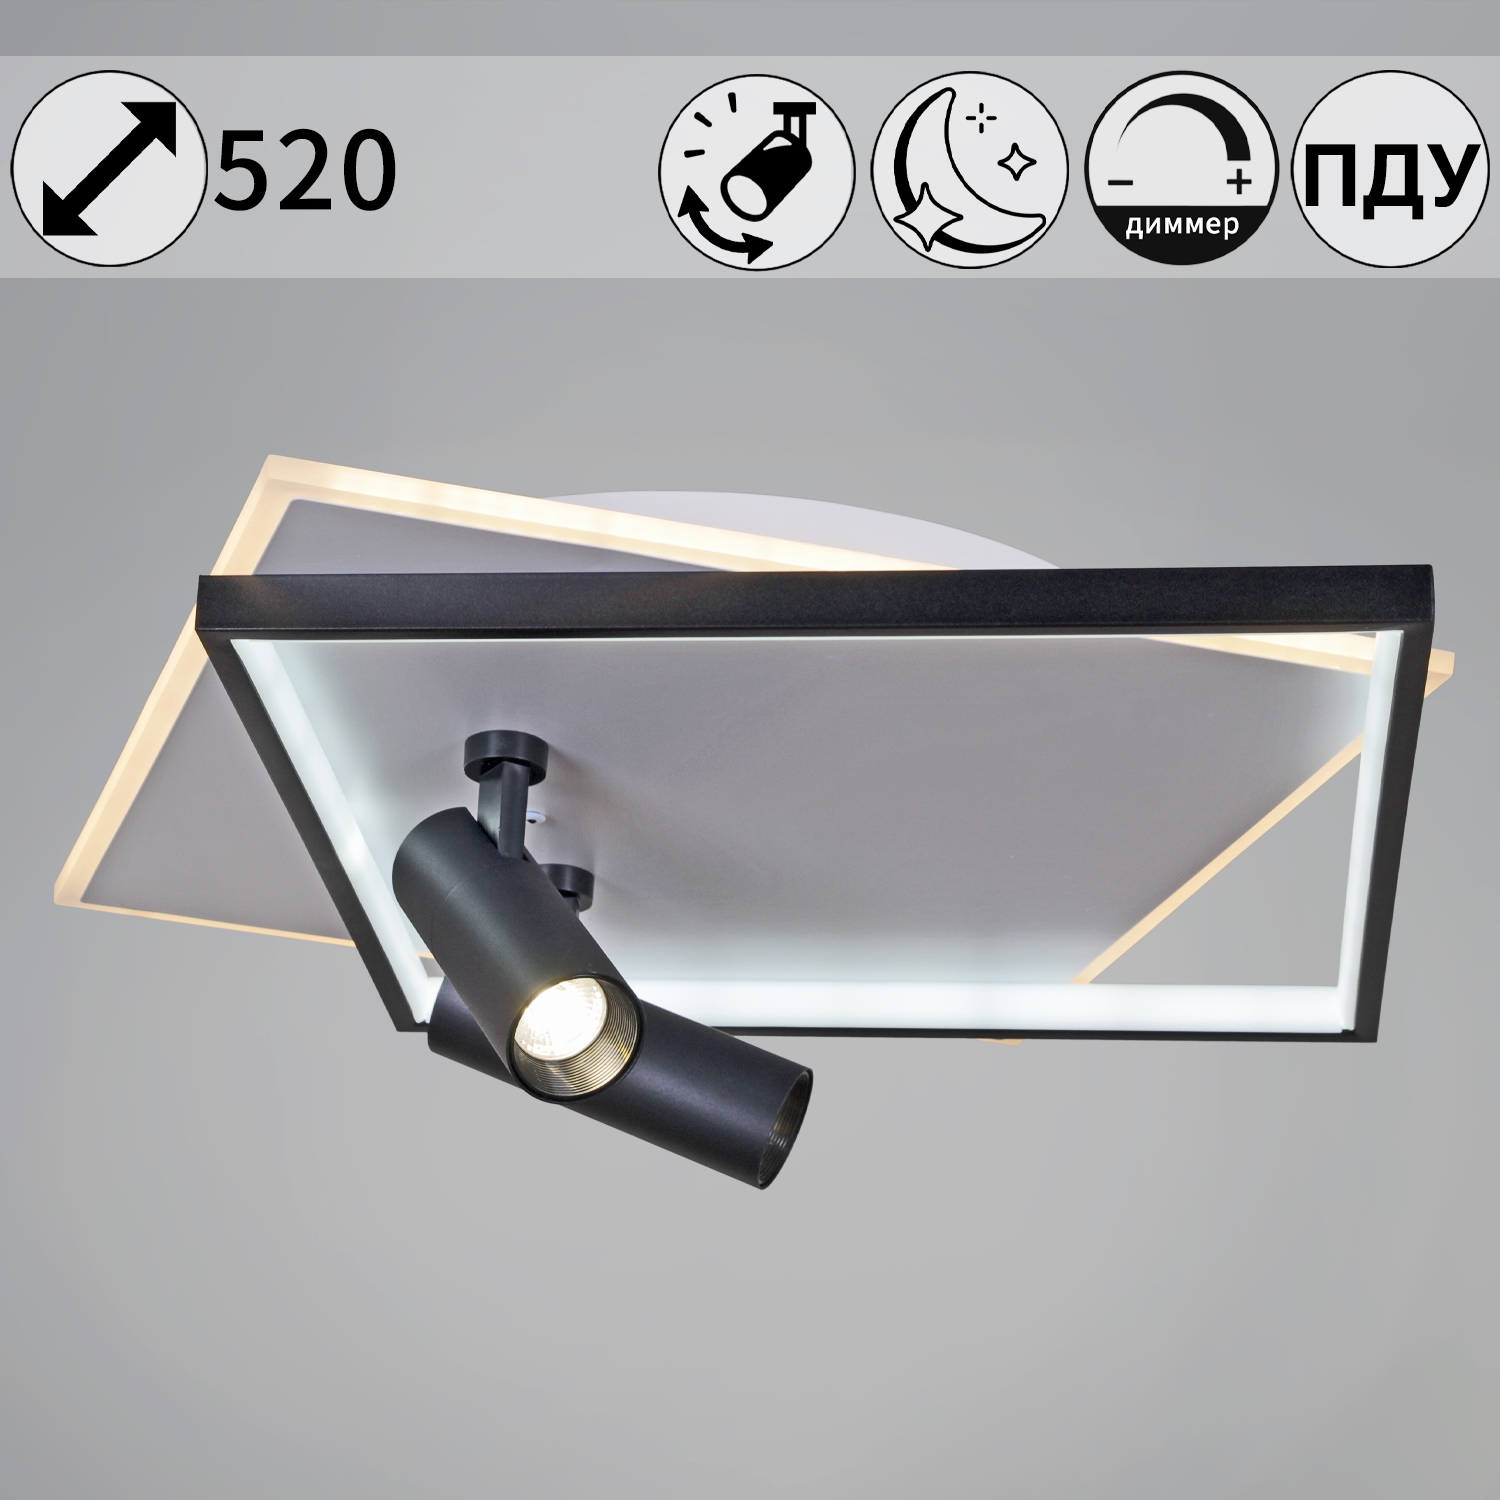 Люстра светодиодная 77759-3.3-500 светильник потолочный - фото